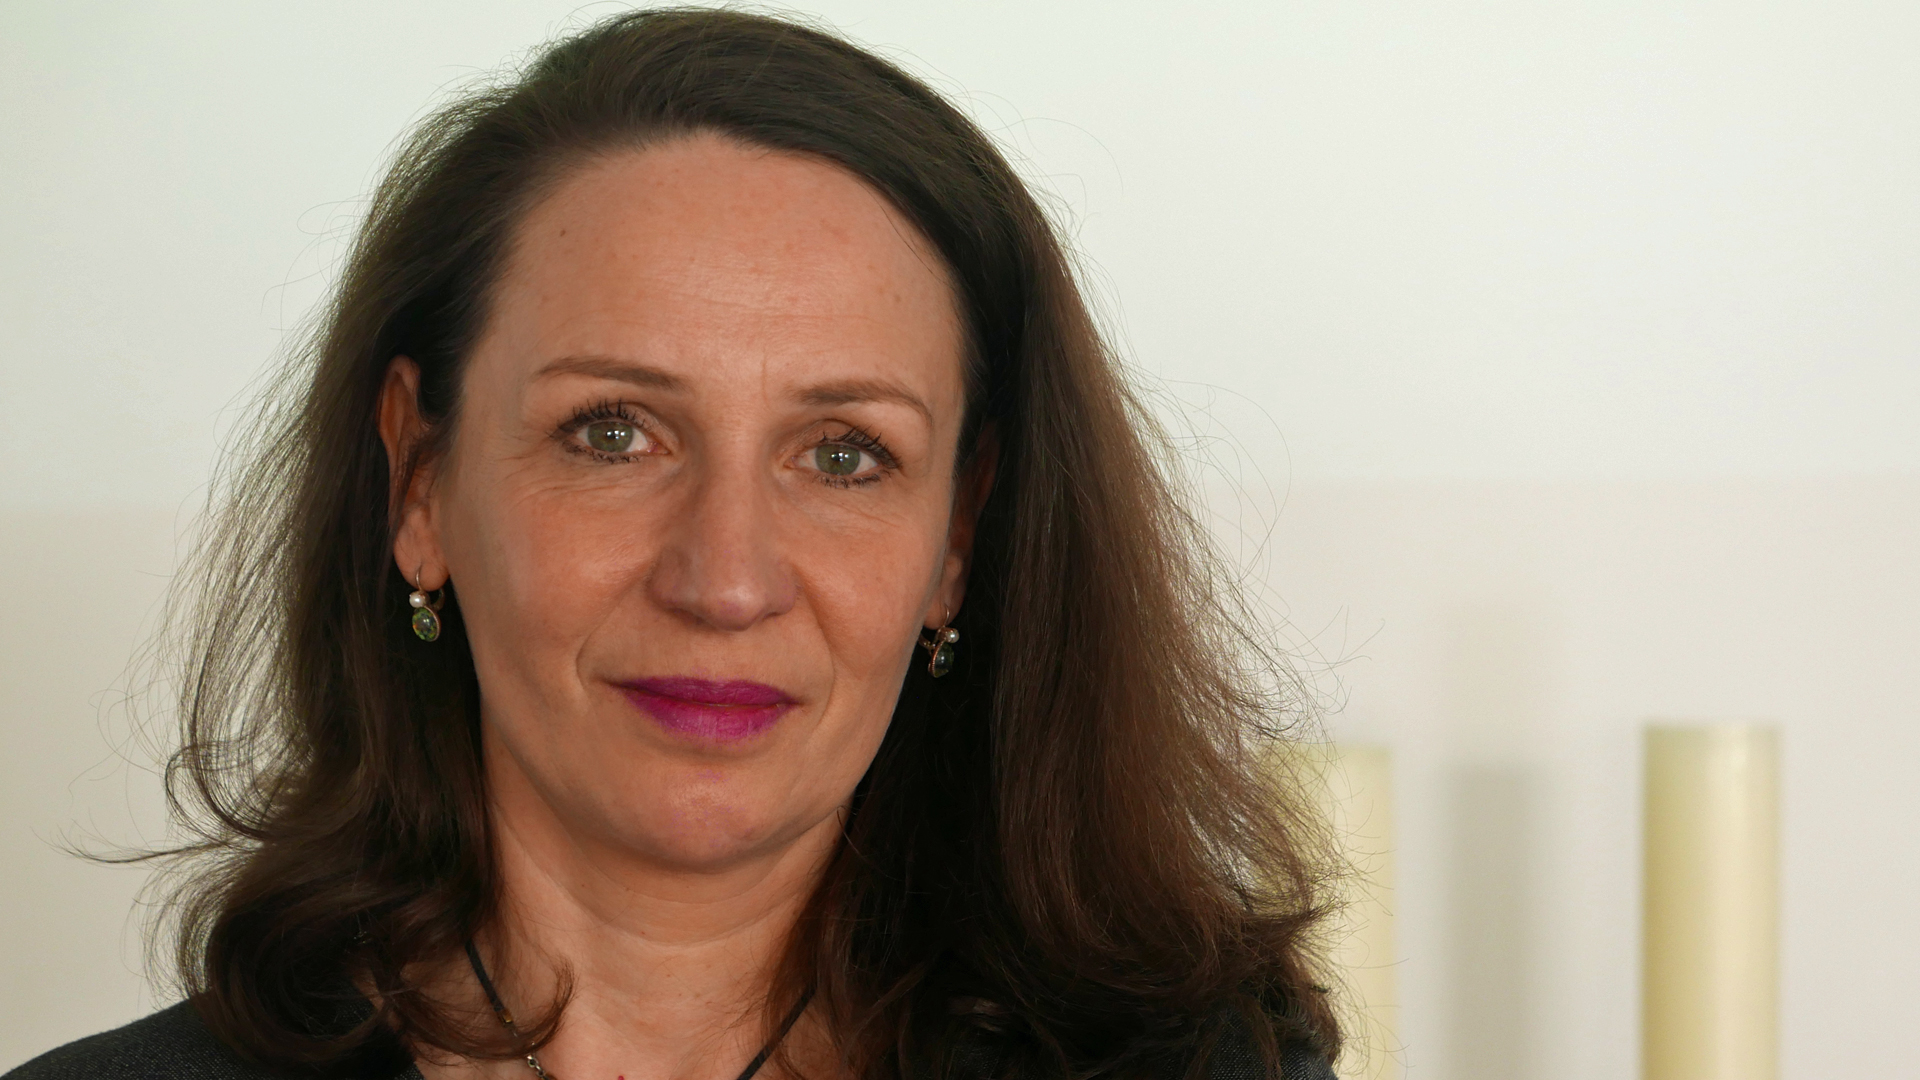 Claudia Becker arbeitet als Redakteurin für die Tageszeitung Die Welt. Die promovierte Historikerin ist verheiratet und Mutter von drei Kindern.